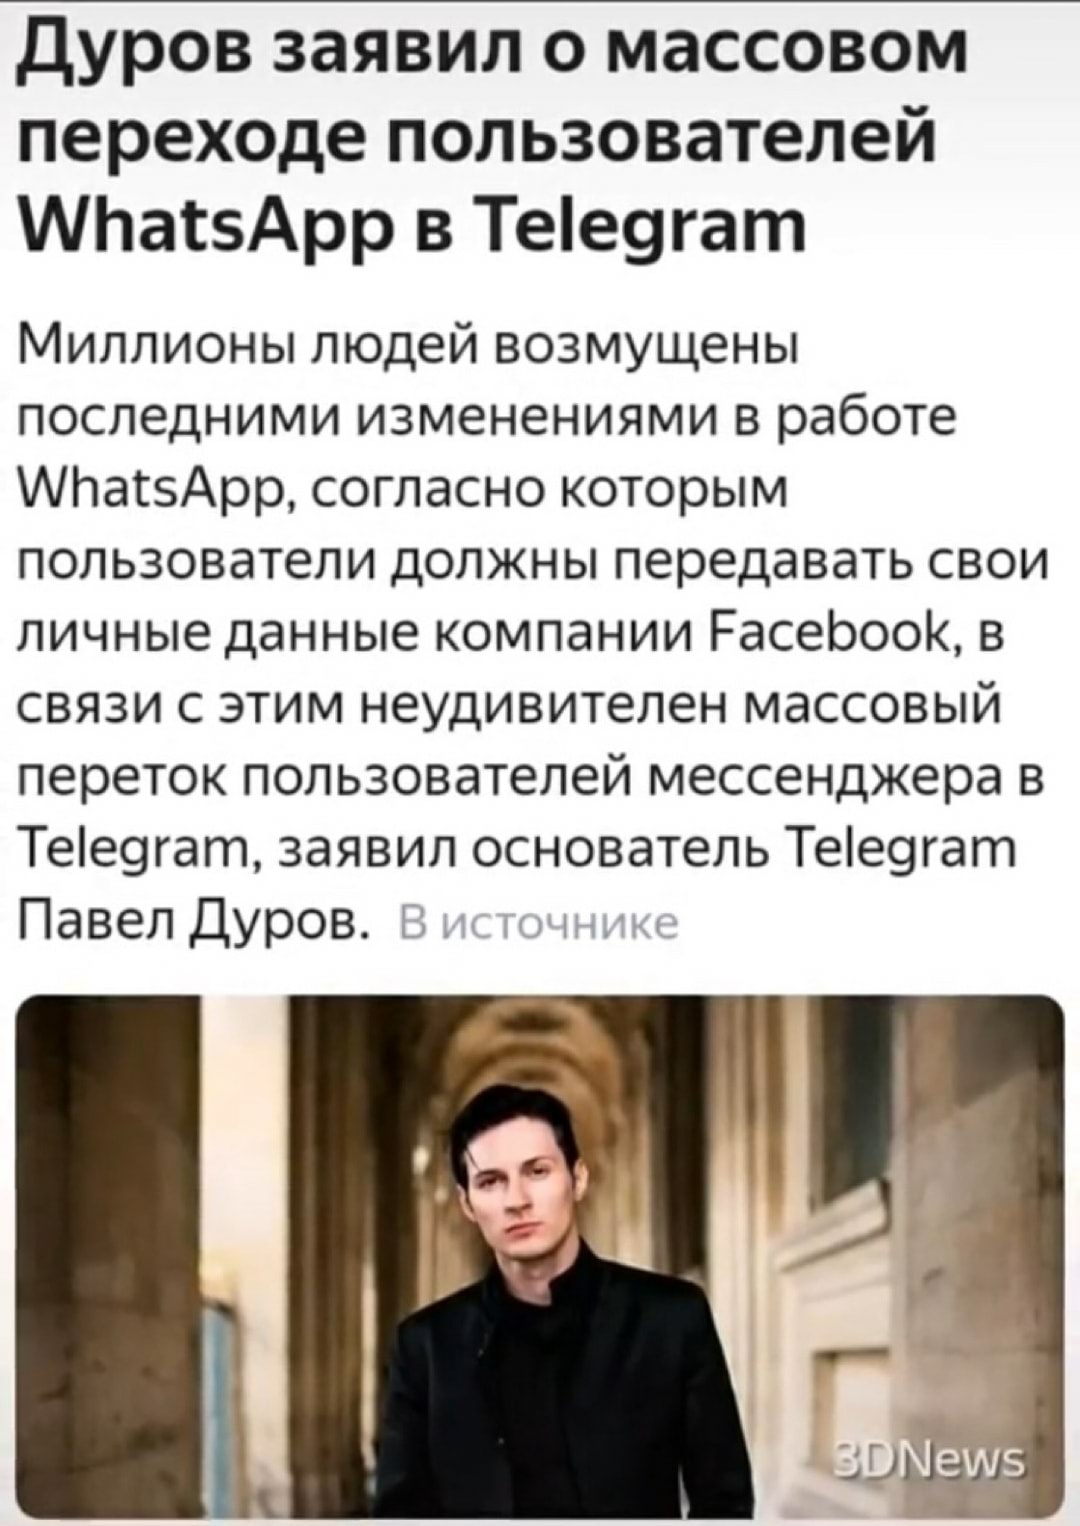 Transition - Durov, Pavel Durov, Whatsapp, Telegram, Facebook